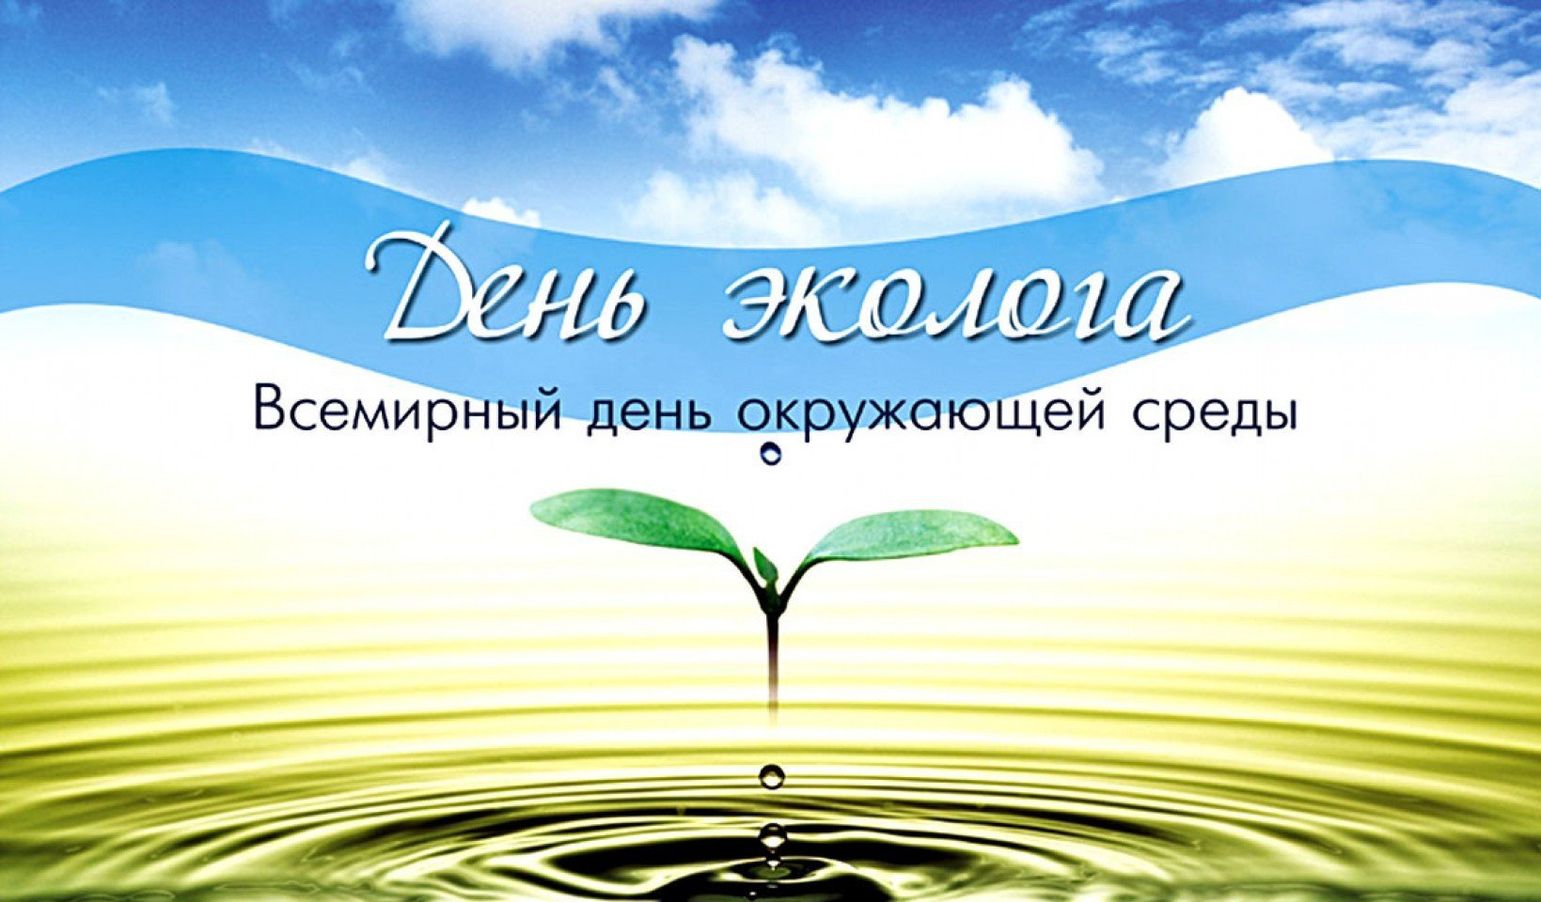 Всемирный день окружающей среды (день эколога)